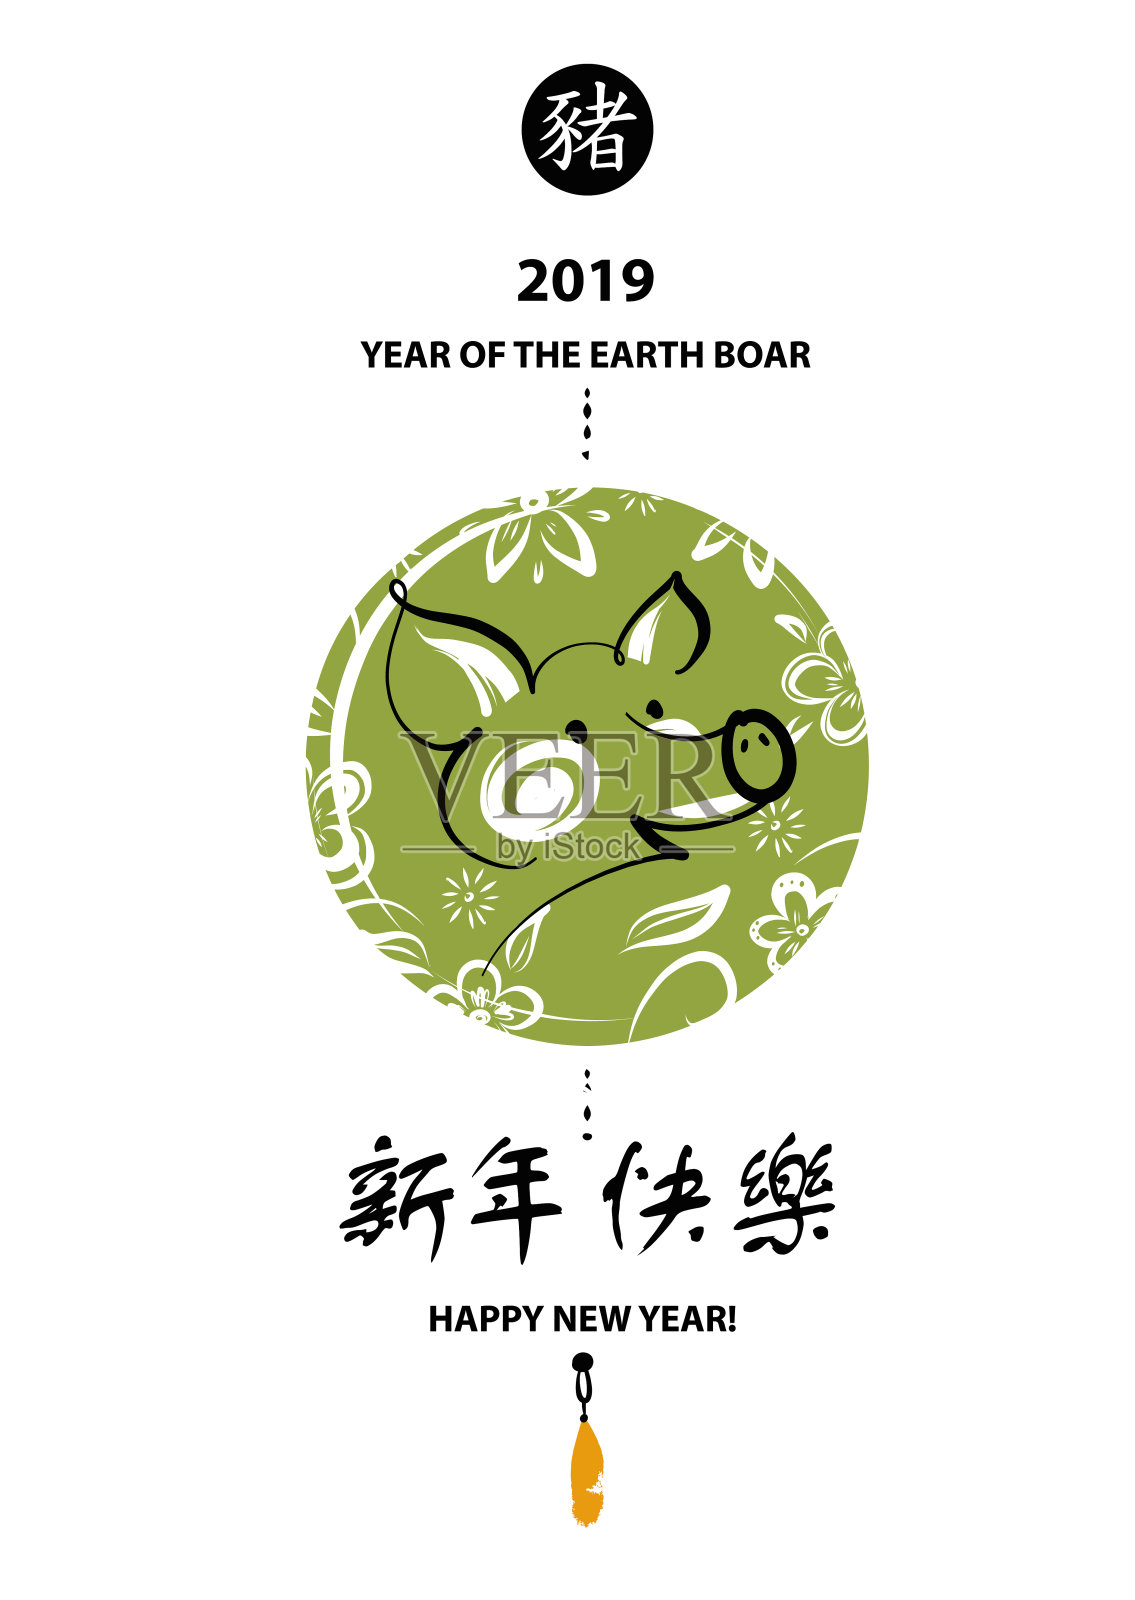 矢量元素的设计符号，符号类型，贺卡，海报，明信片，日历和邀请与猪2019。剪影公猪，用中文文字表示猪新年快乐，大地公猪设计模板素材